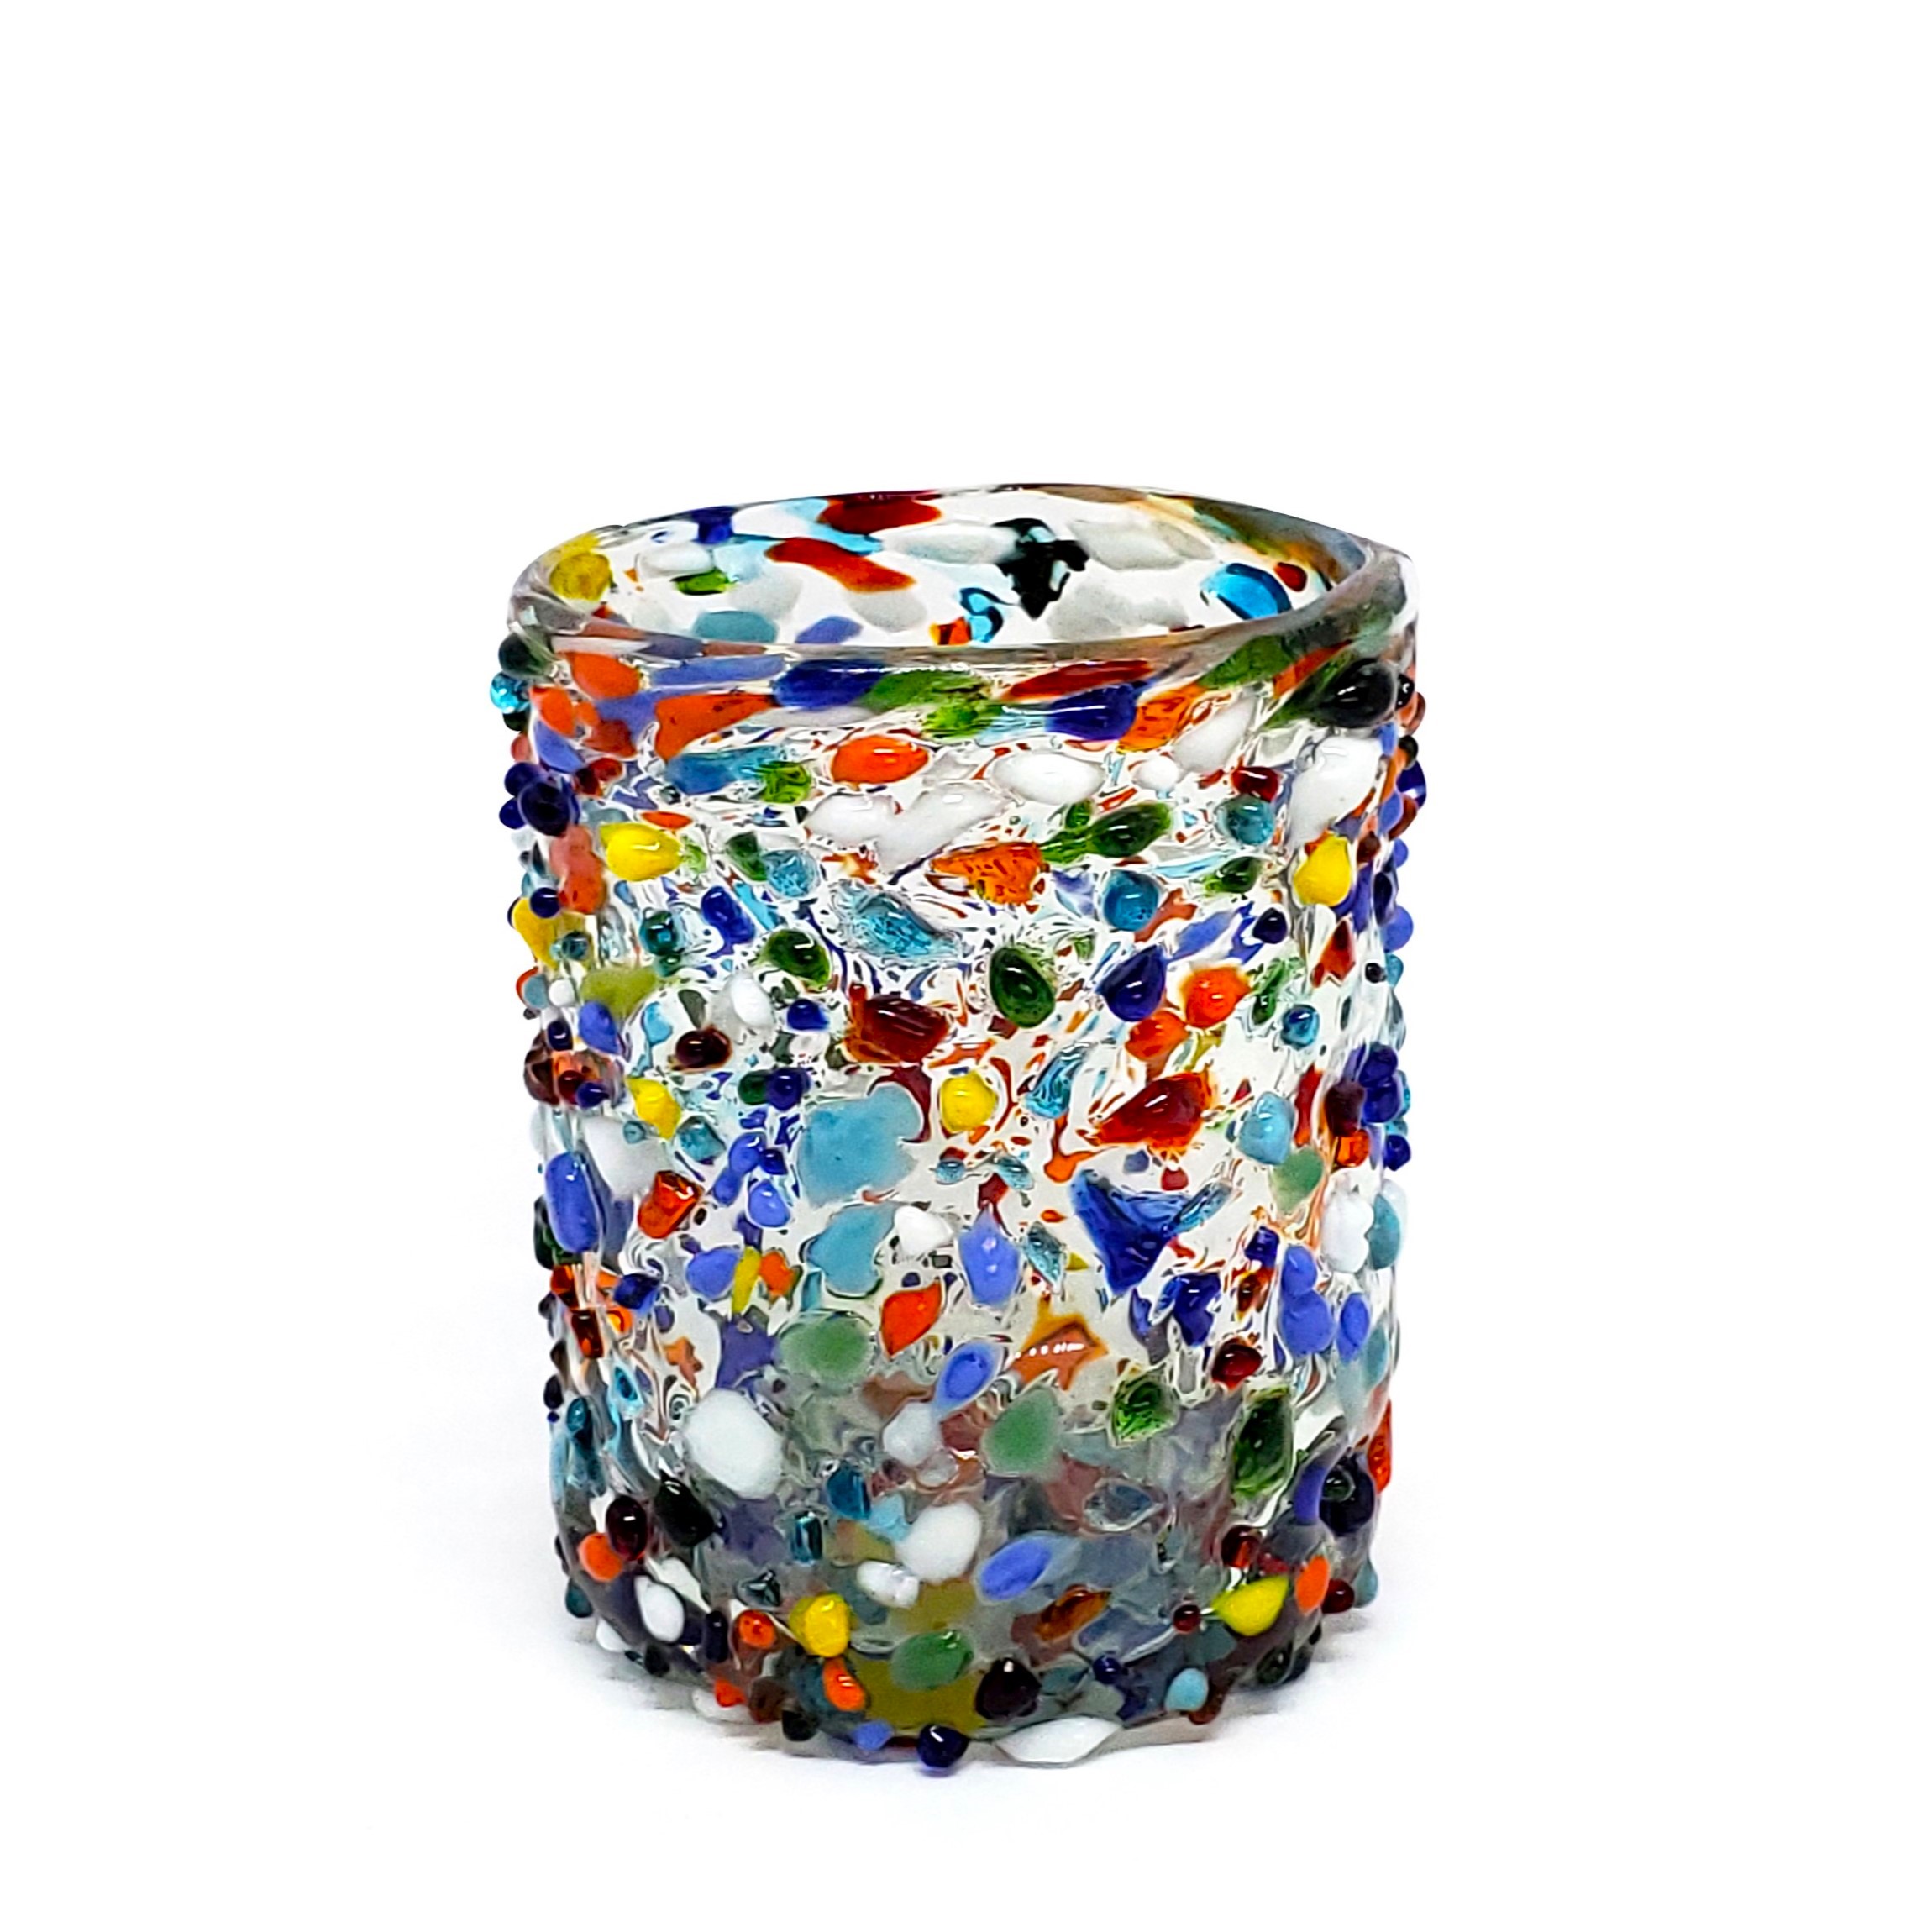 VIDRIO SOPLADO / vasos chicos Confeti granizado, 10 oz, Vidrio Reciclado, Libre de Plomo y Toxinas